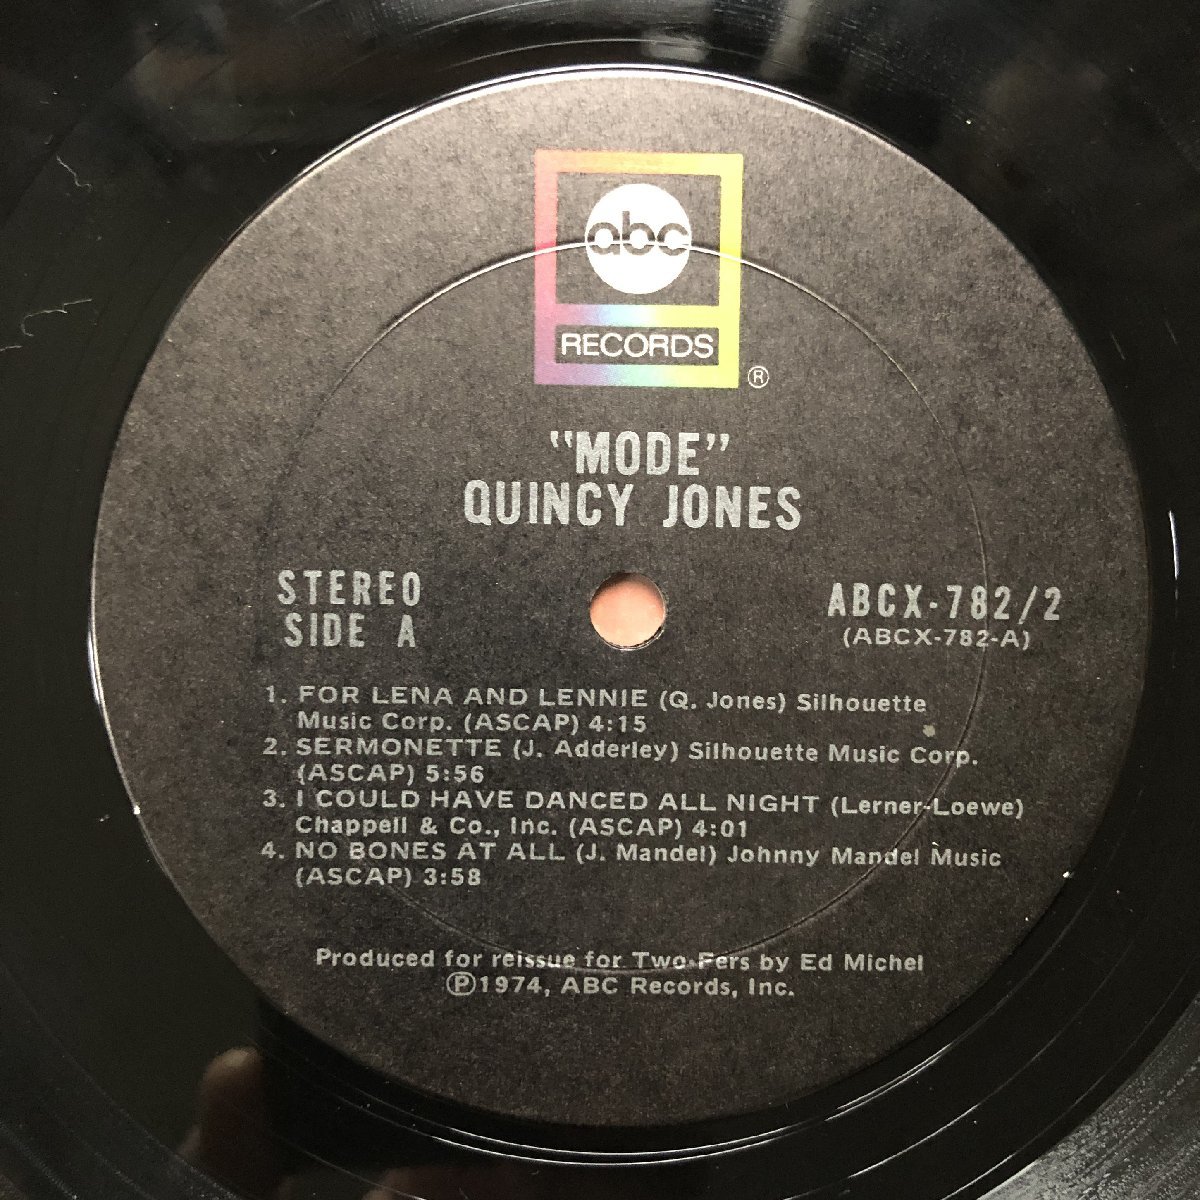 原信夫Collection 美盤 1974年 米国 本国オリジナルリリース盤 Quincy Jones 2枚組LPレコード Mode ジャズ_画像7